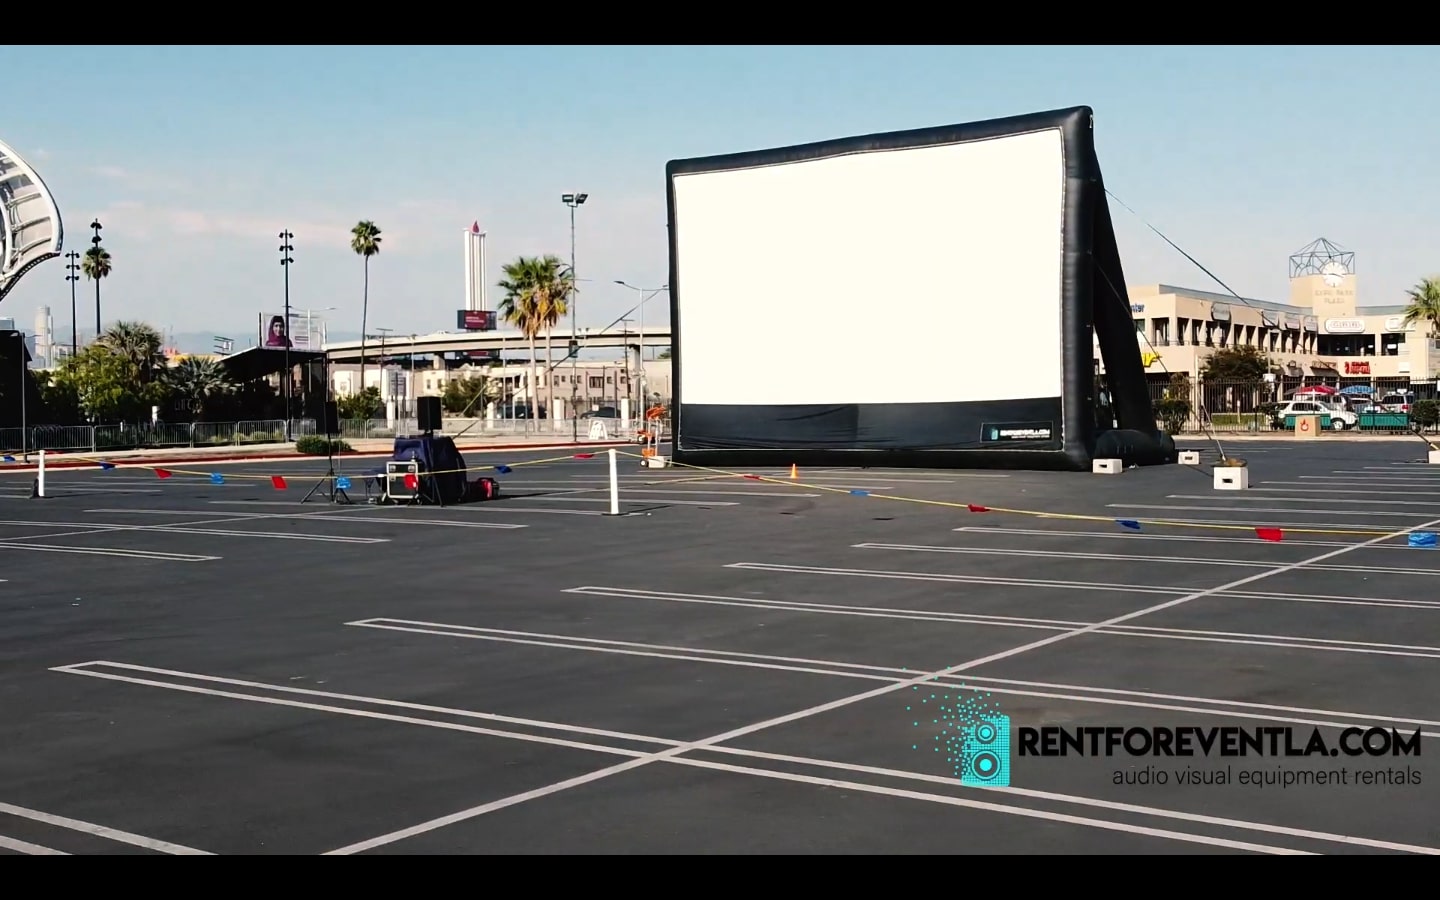 outdoor movie screen rental